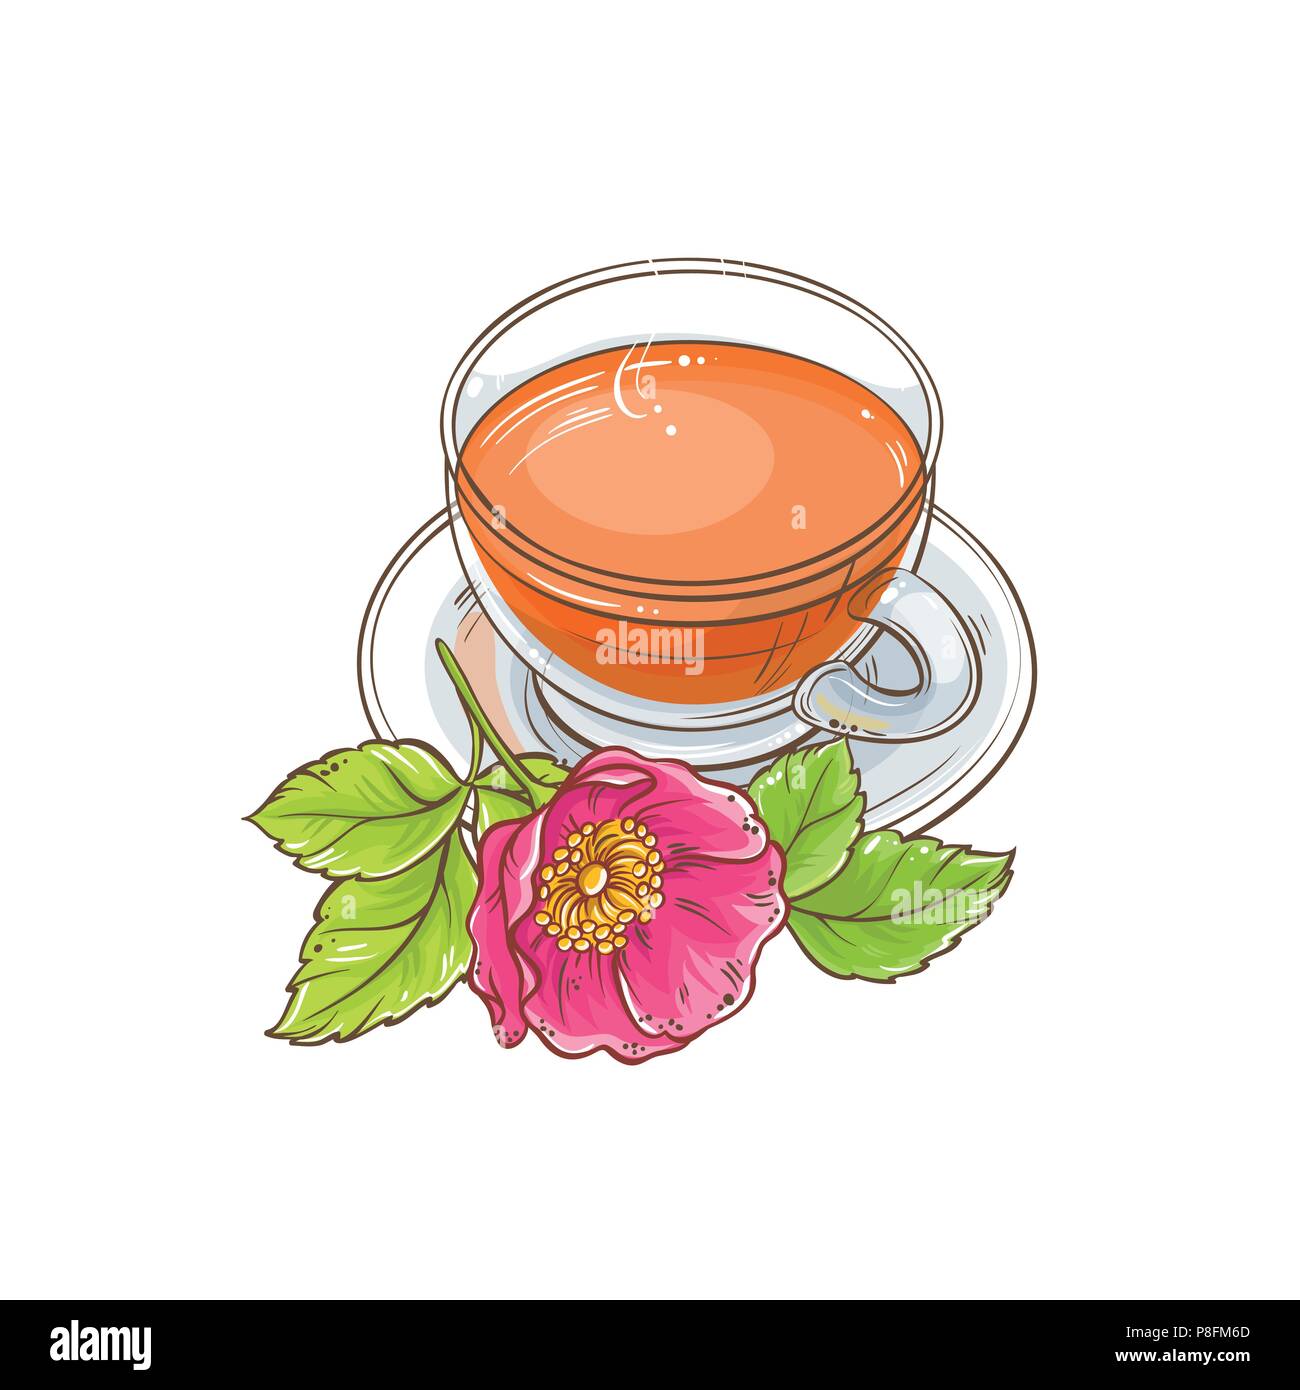 dog rose tea illustration on white background Stock Vector